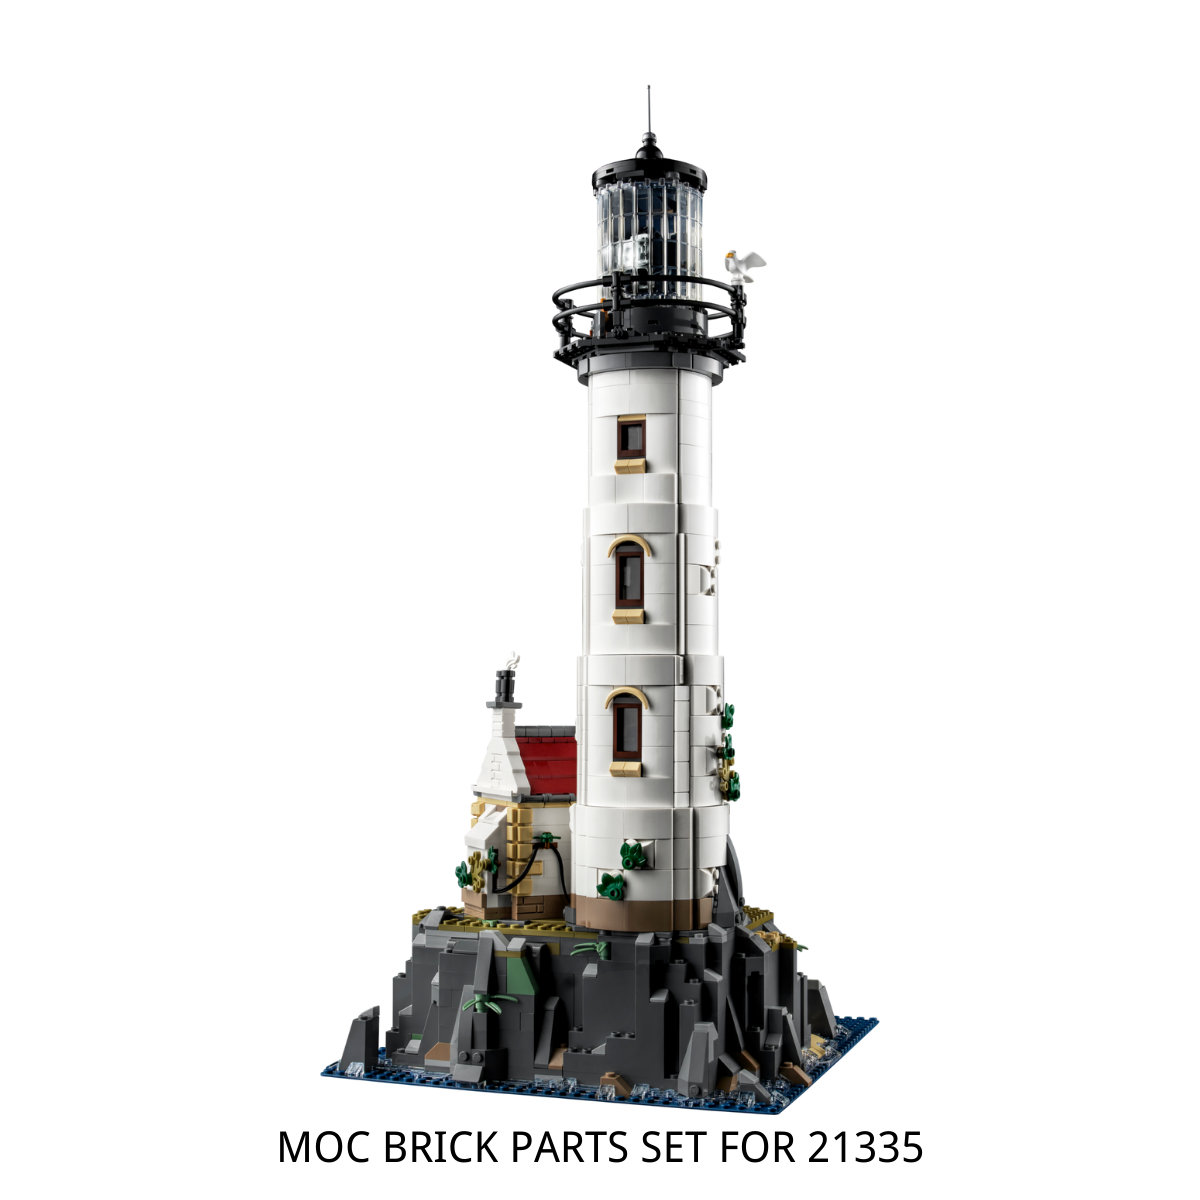 MOC bricks set for 21335 Motorized Lighthouse